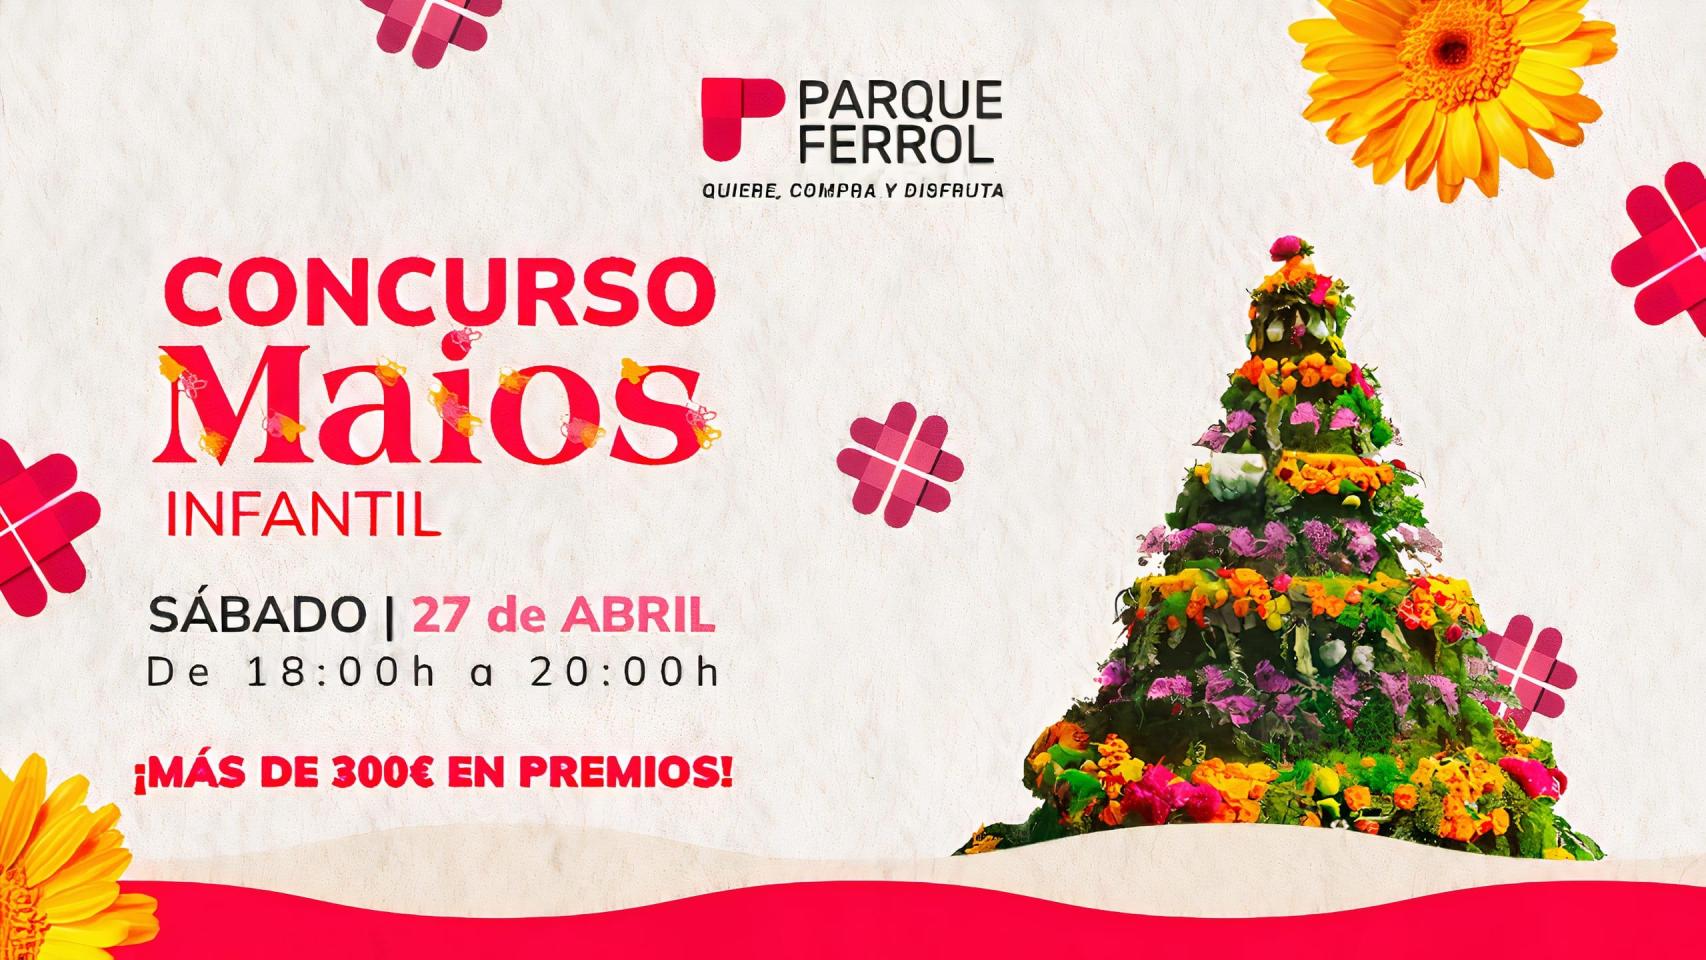 El Centro Comercial Parque Ferrol celebra un Concurso infantil de Maios el 27 de abril